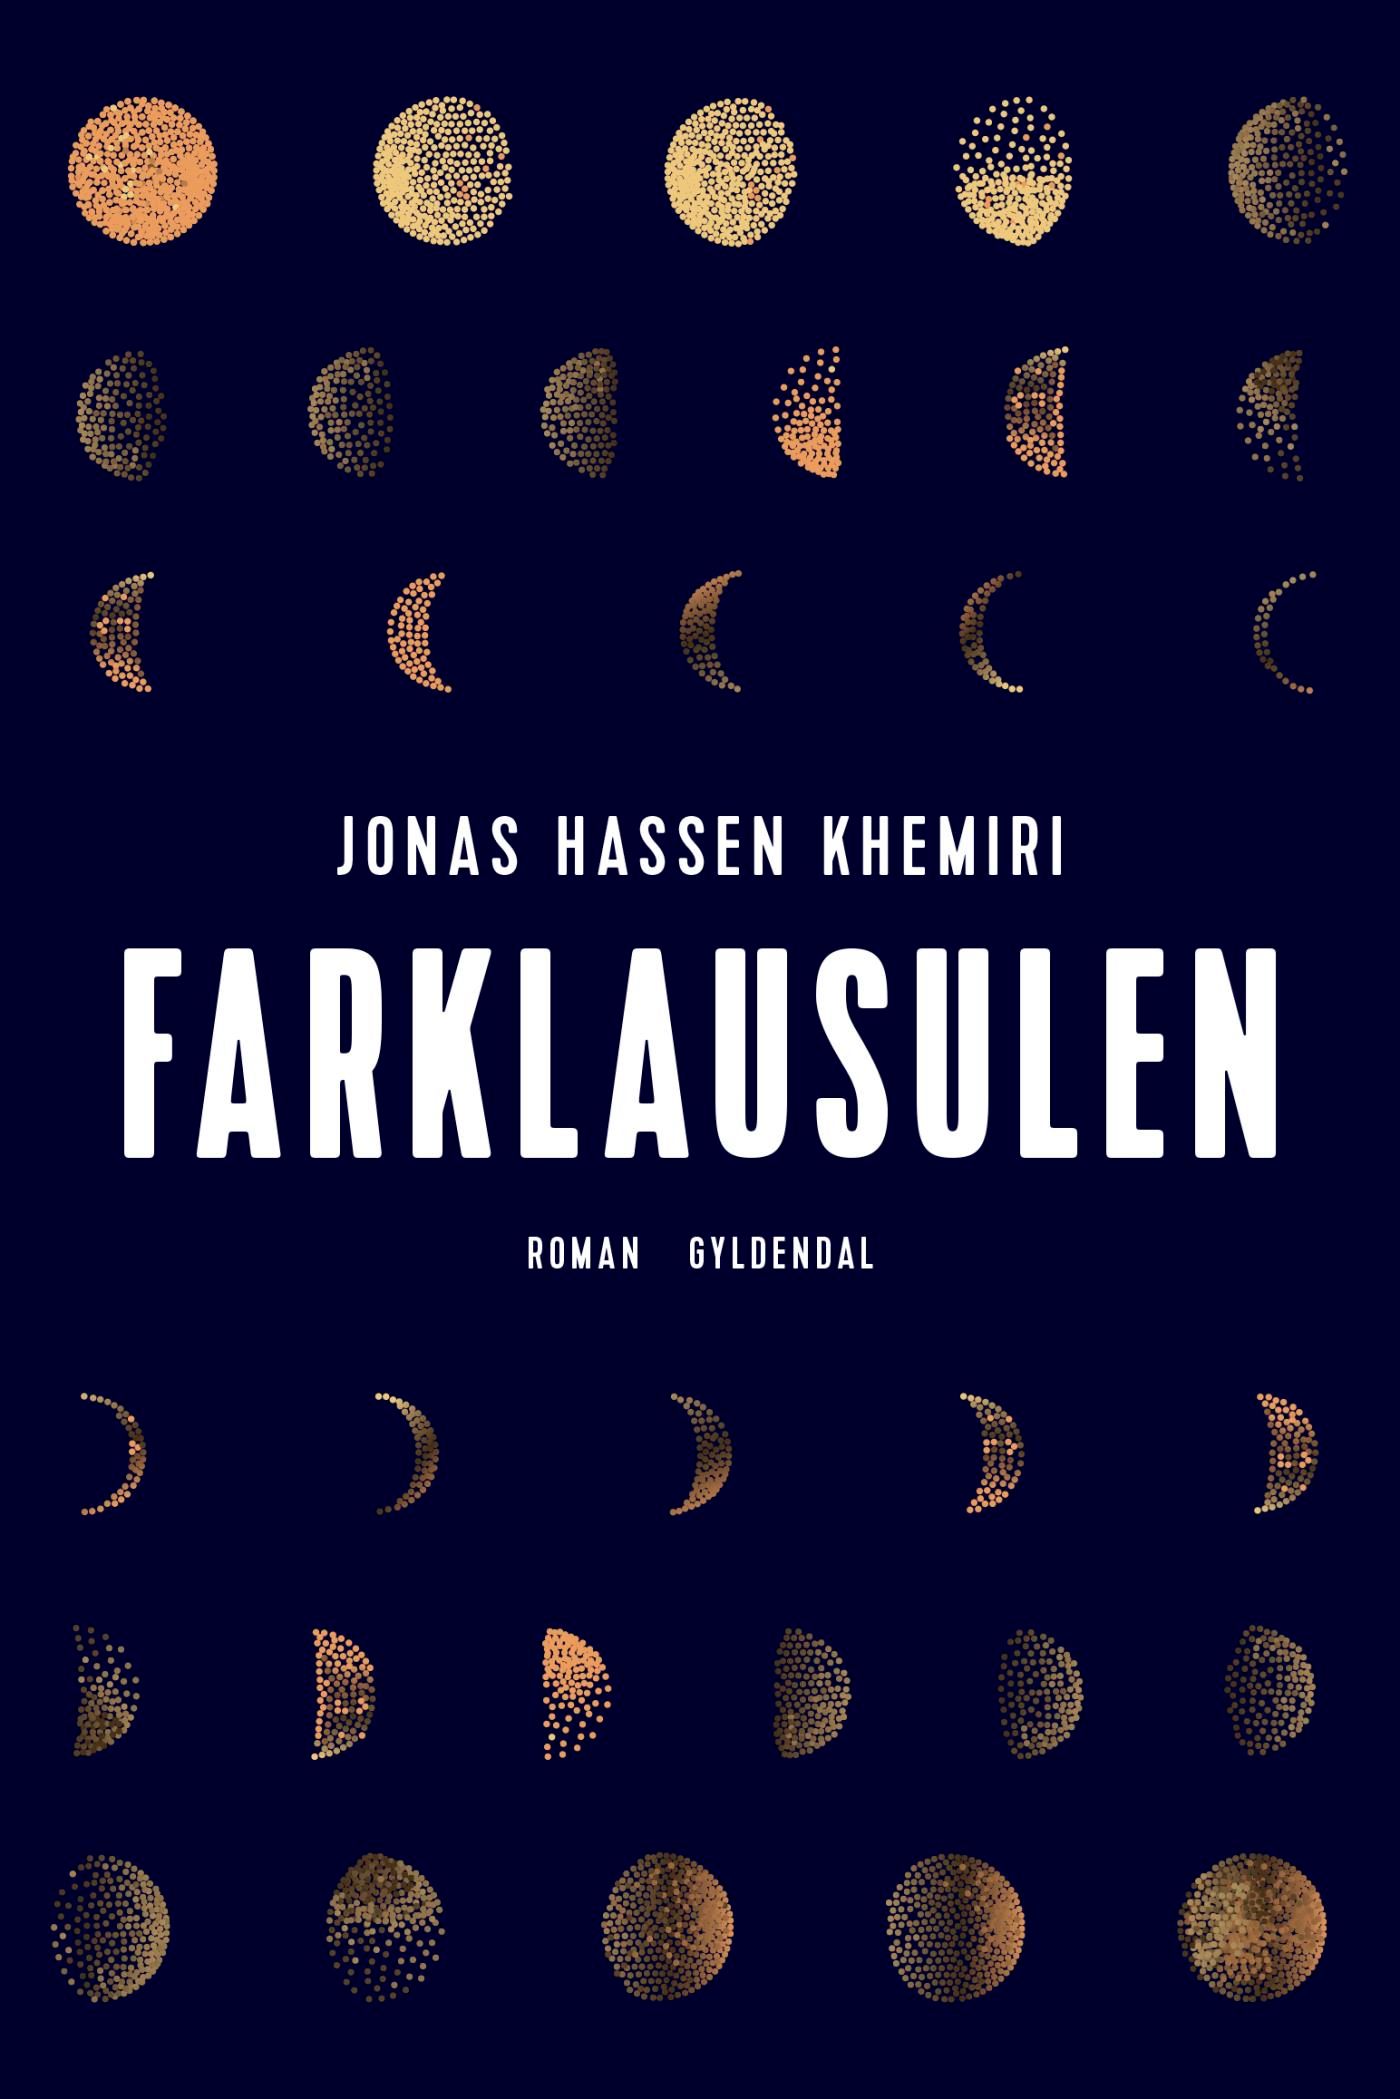 Farklausulen, e-bog af Jonas Hassen Khemiri